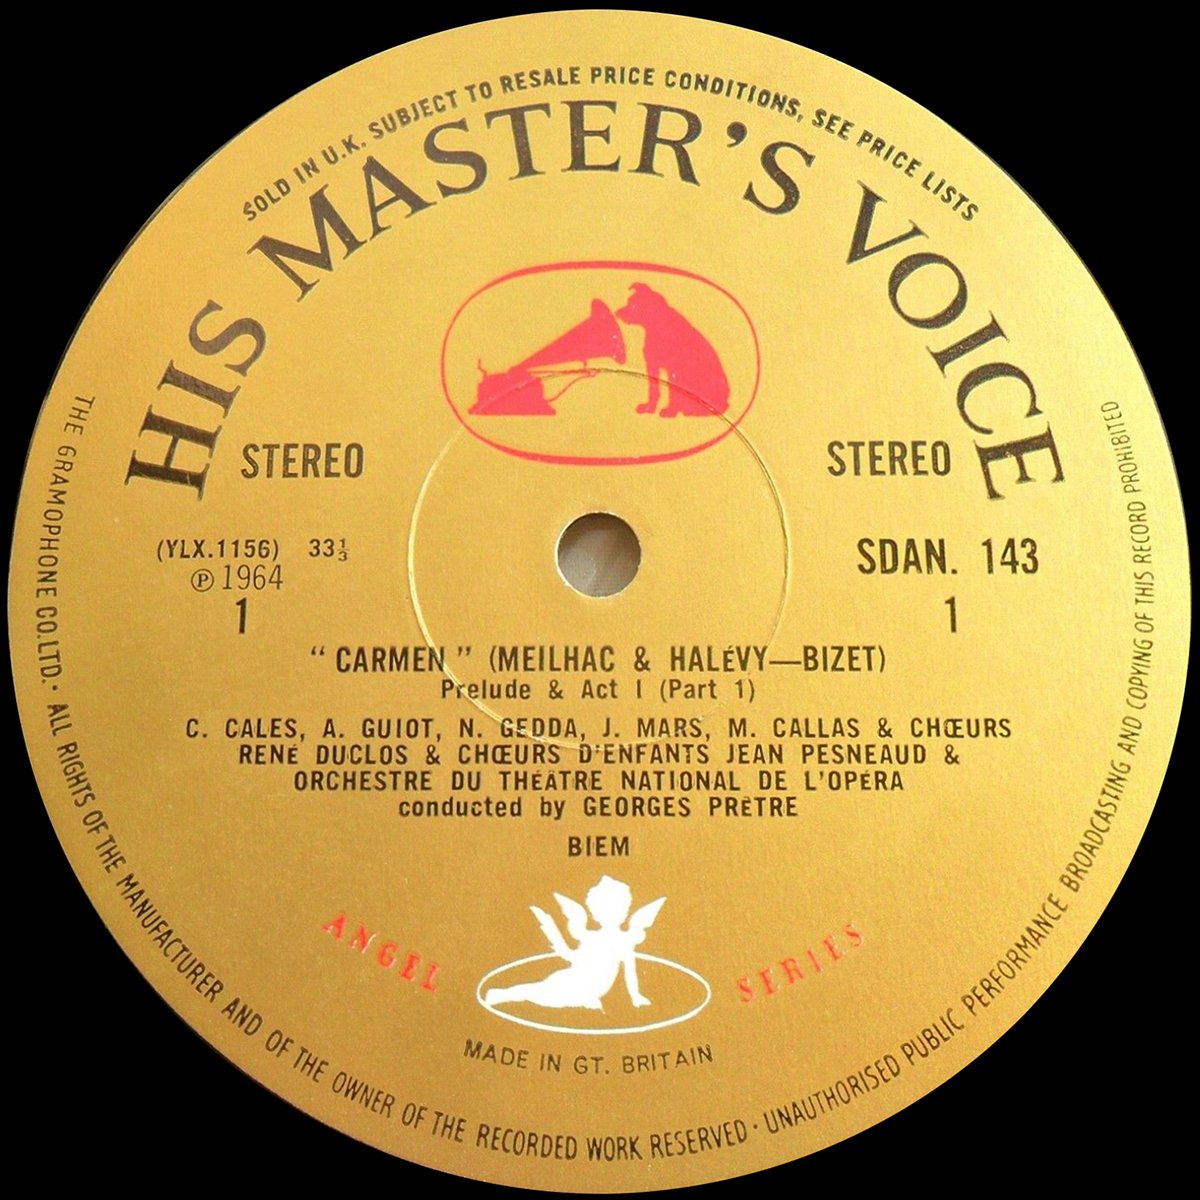 HMV Angel Series | SDAN 143 | Records | LP | Vinyl | Label Guide | Références | England